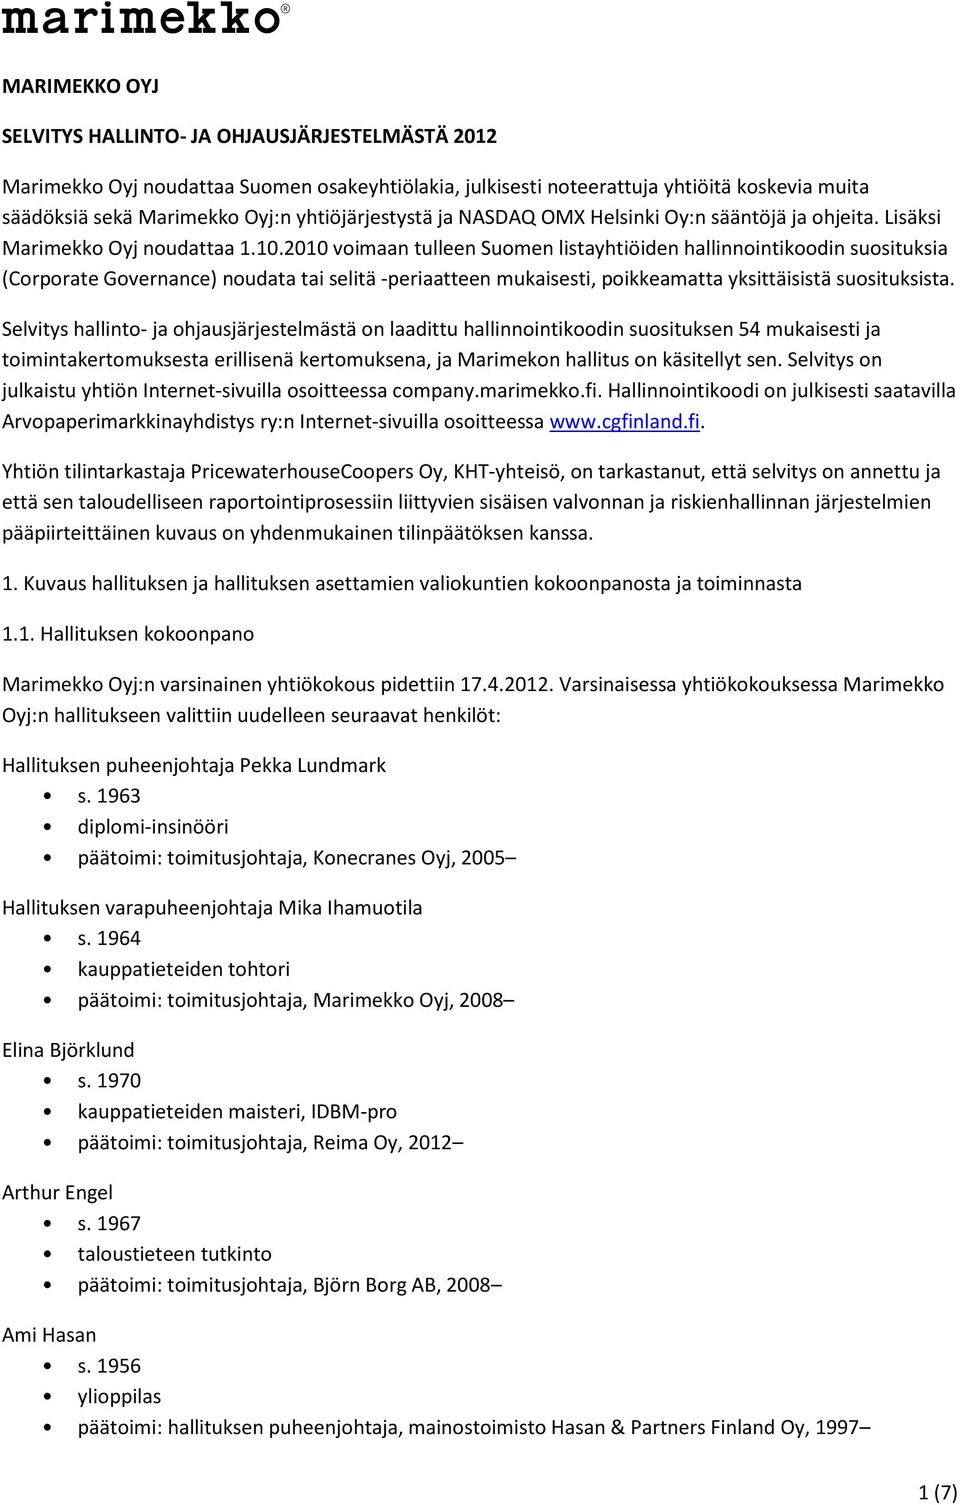 2010 voimaan tulleen Suomen listayhtiöiden hallinnointikoodin suosituksia (Corporate Governance) noudata tai selitä -periaatteen mukaisesti, poikkeamatta yksittäisistä suosituksista.